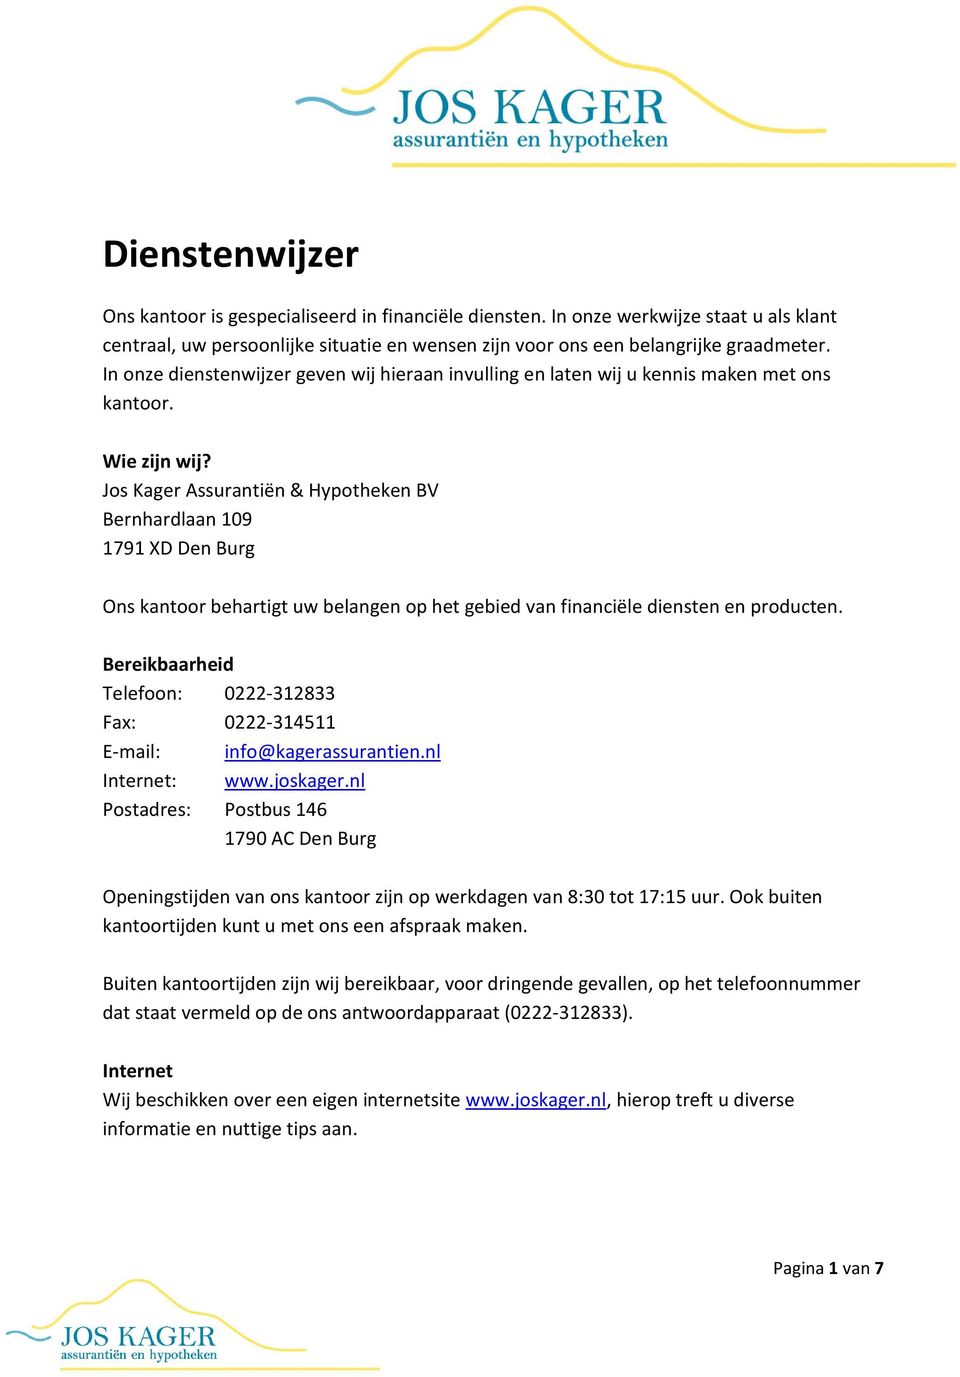 Jos Kager Assurantiën & Hypotheken BV Bernhardlaan 109 1791 XD Den Burg Ons kantoor behartigt uw belangen op het gebied van financiële diensten en producten.